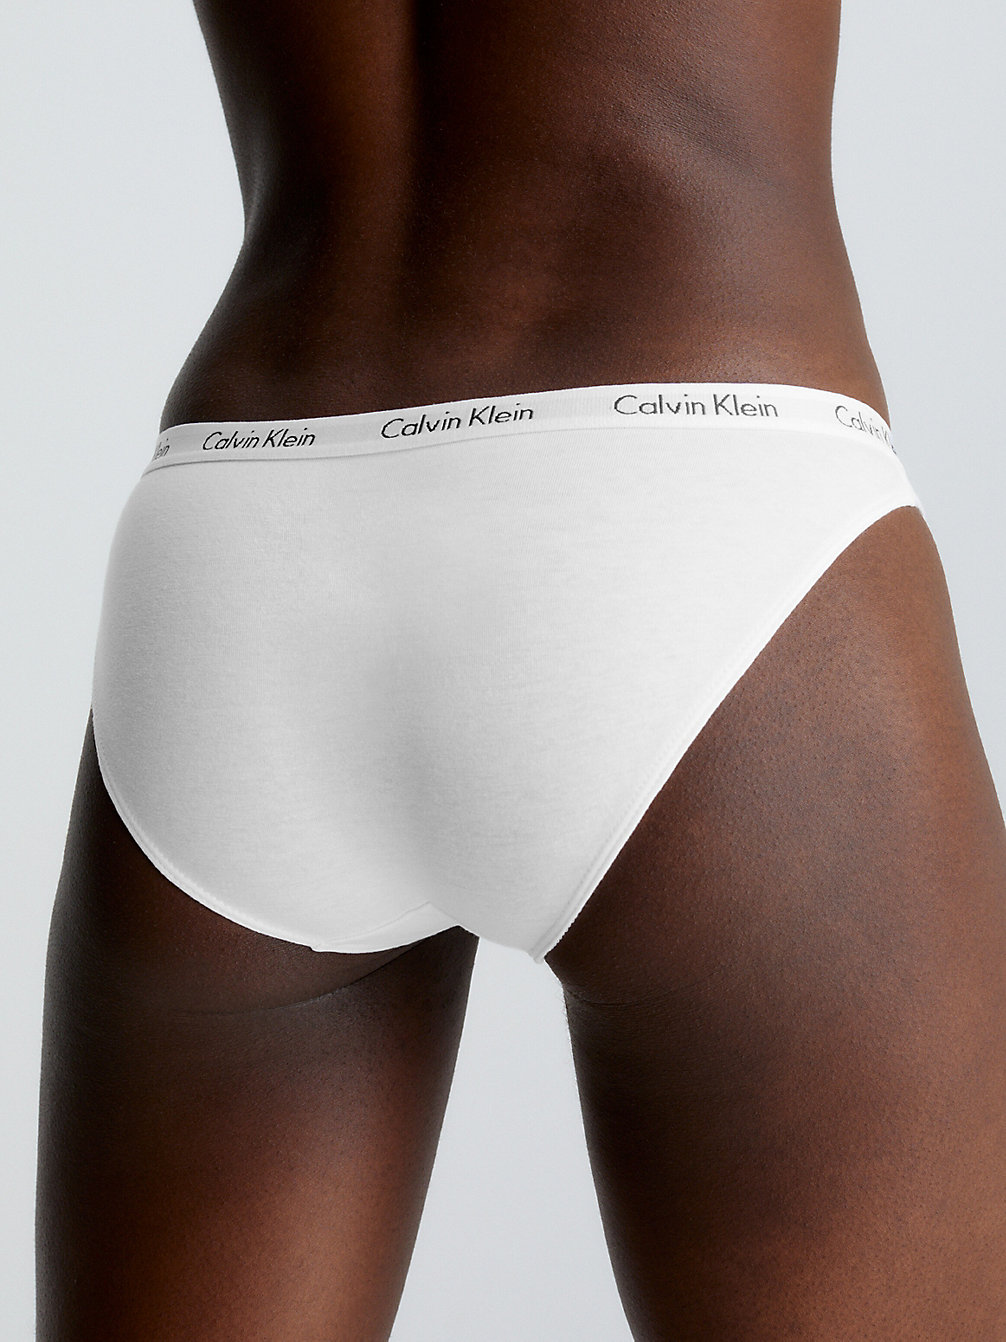 WHITE > Слипы - Carousel > undefined Женщины - Calvin Klein